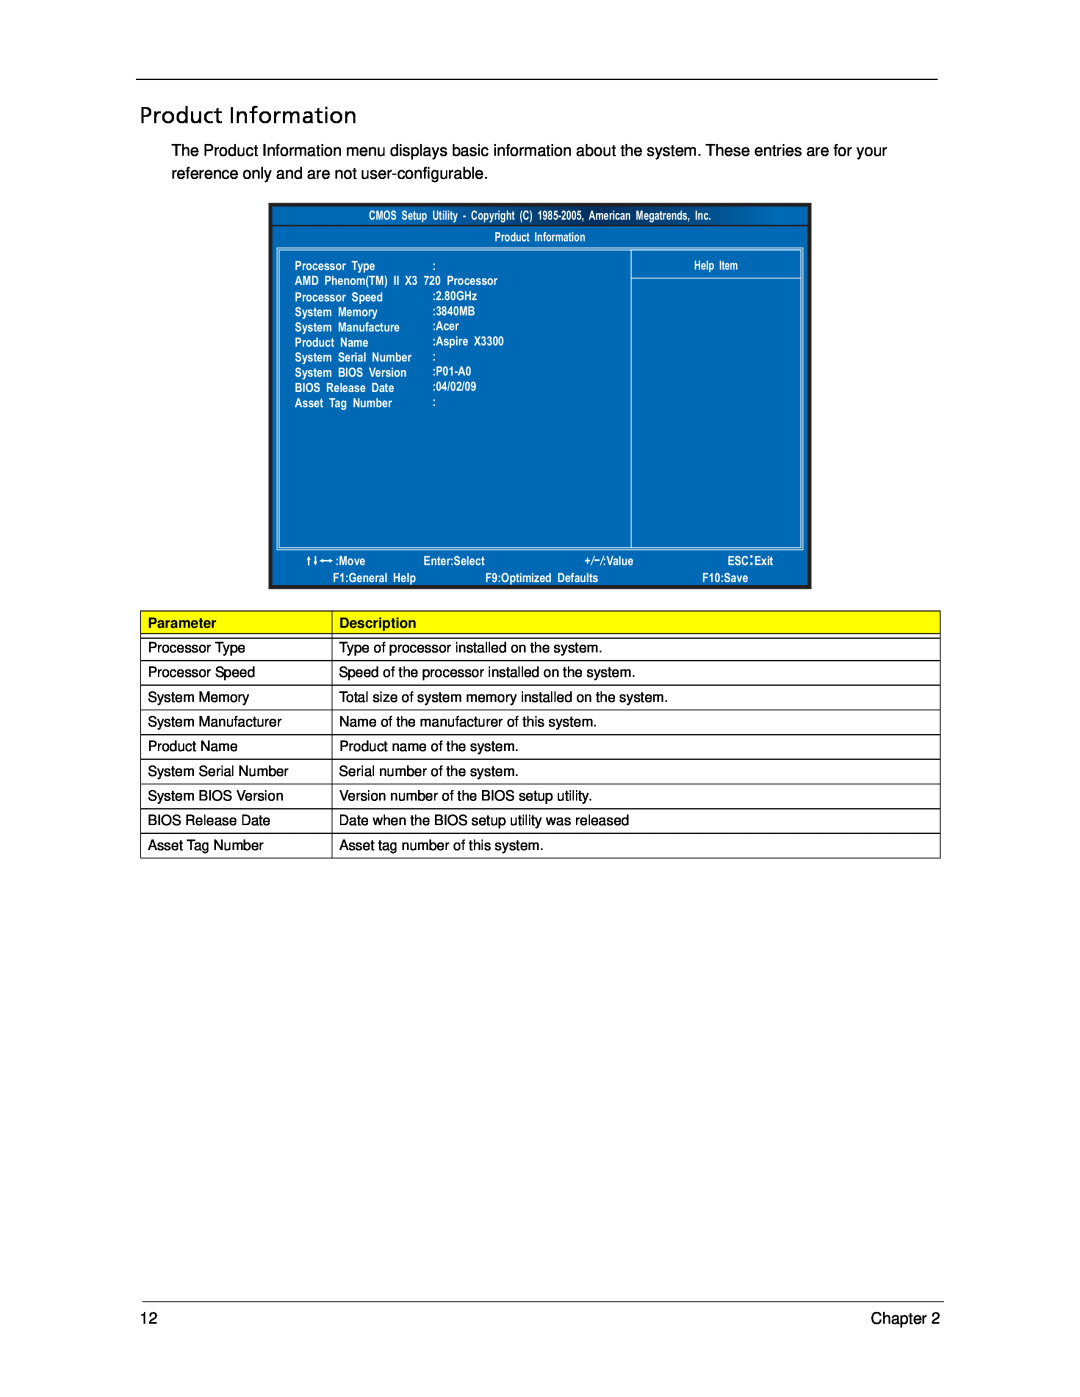 Acer X3300, X5300 manual Product Information, Parameter, Description 